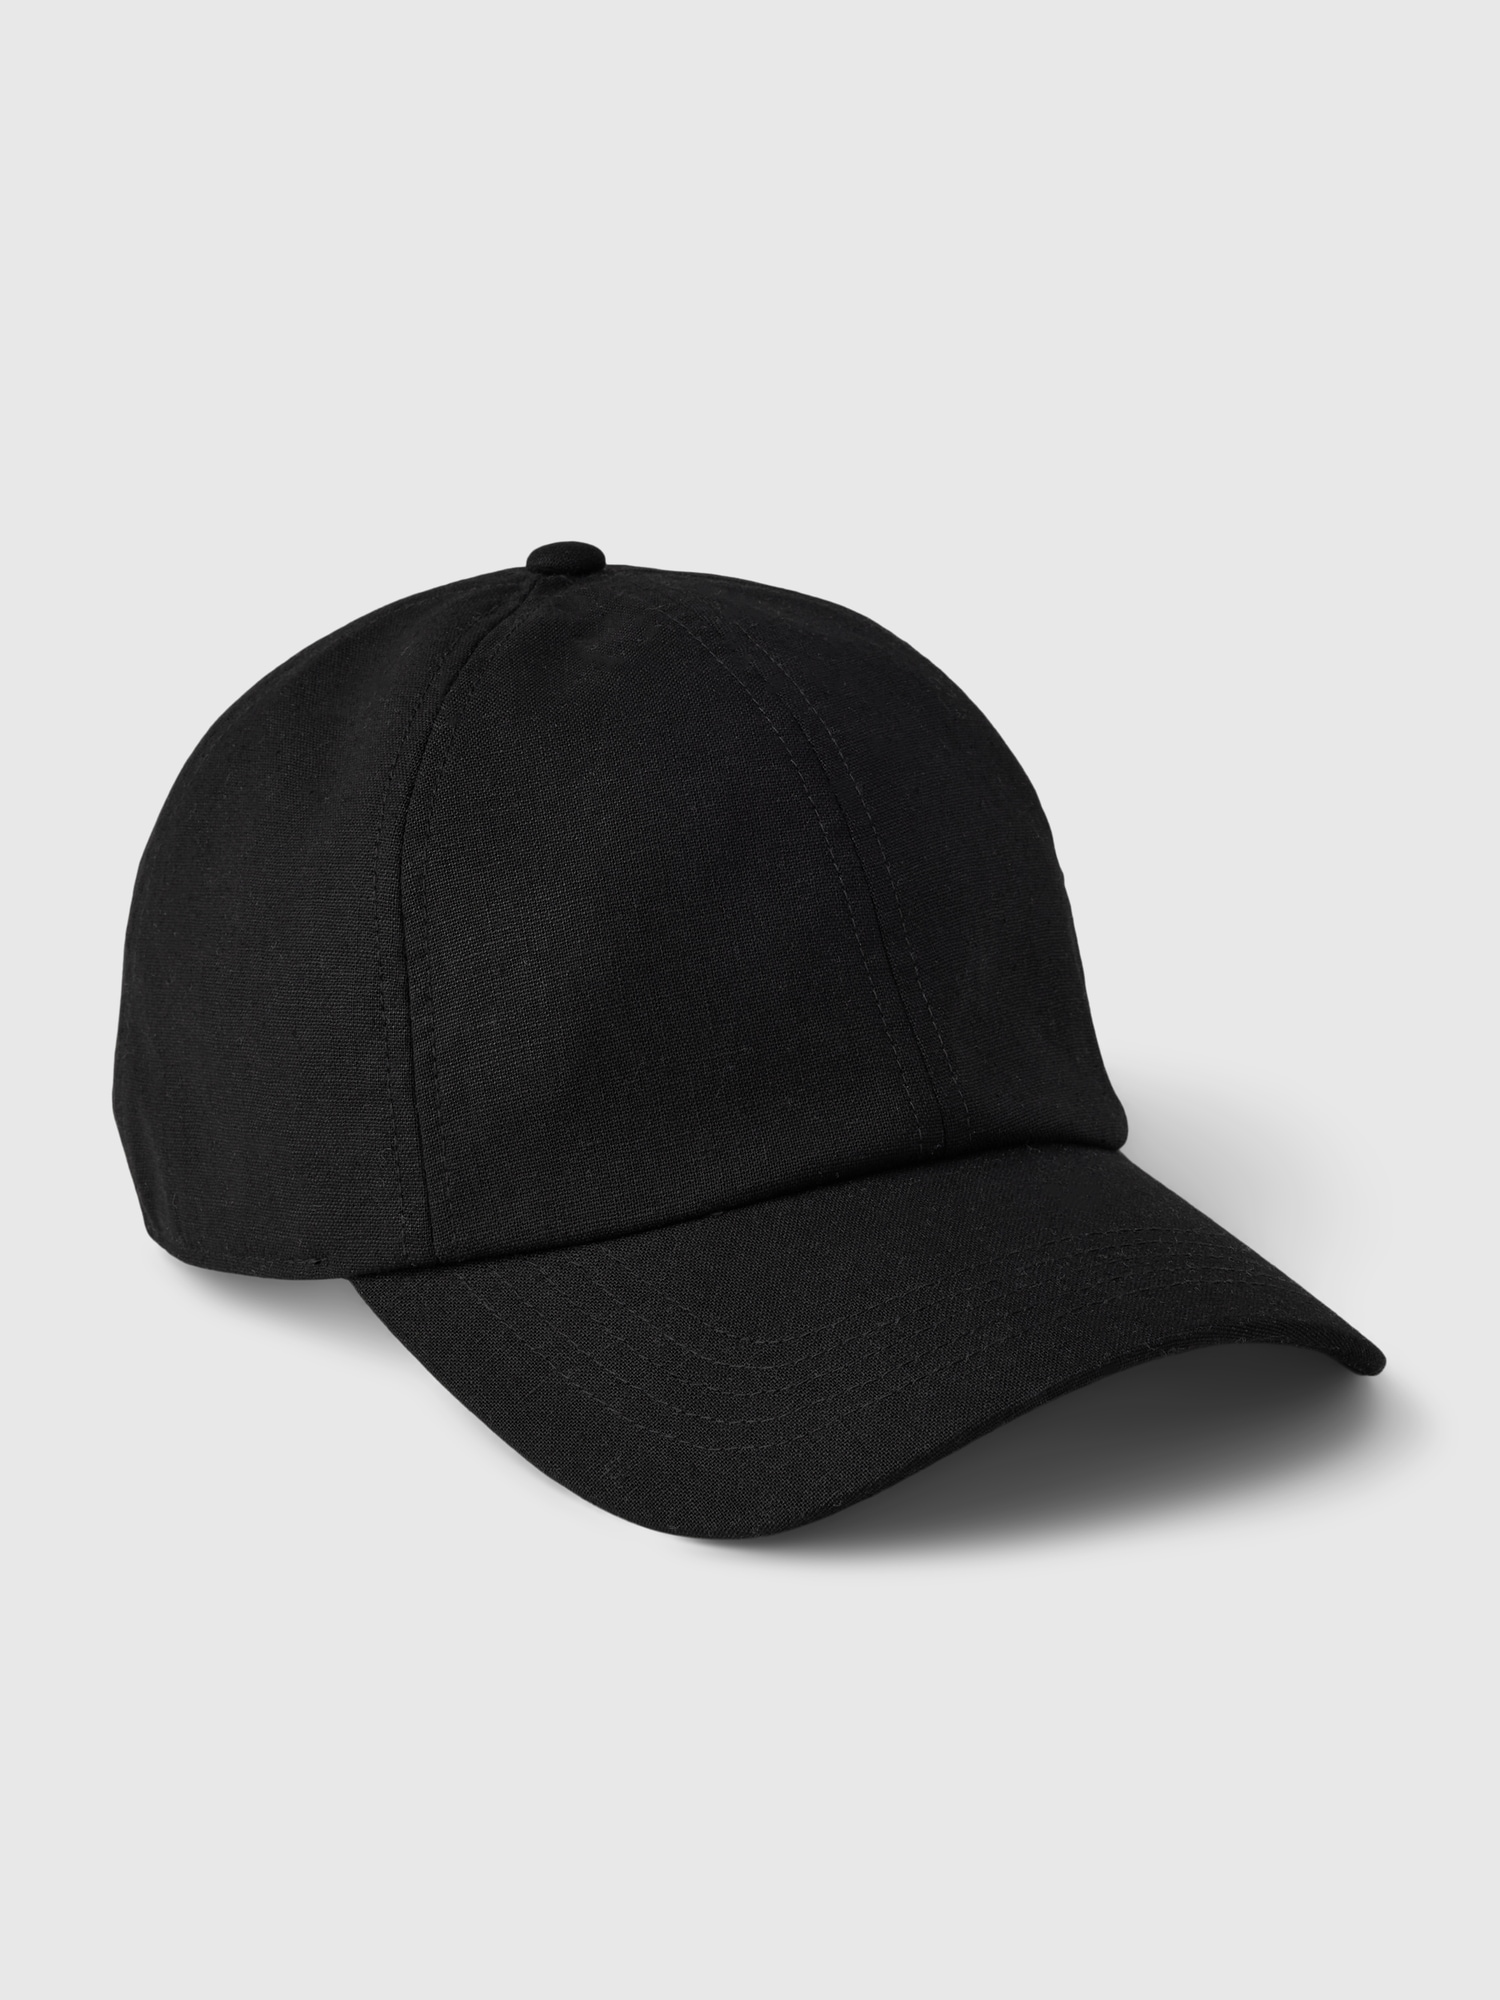 Women's Linen-Cotton Baseball Hat by Gap True Black One Size